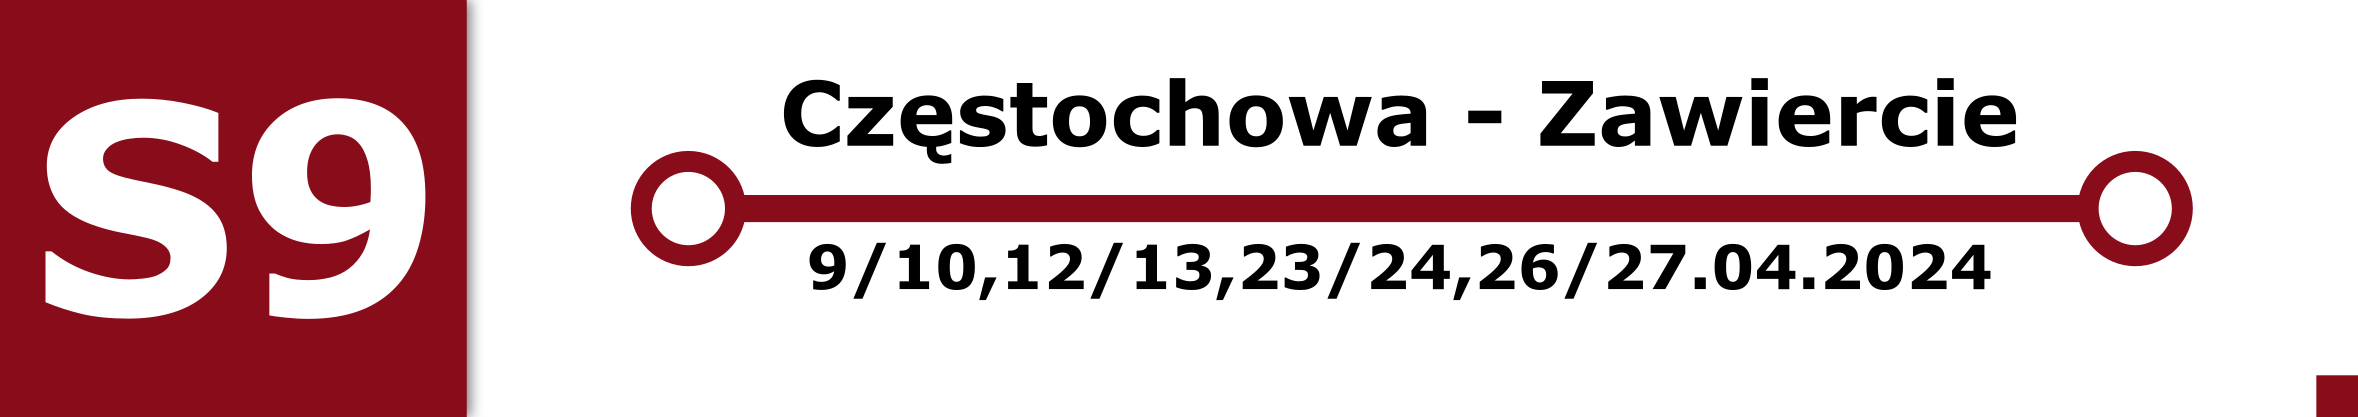 Linia S9. Zastępcza komunikacja autobusowa na odcinku Częstochowa - Zawiercie w noce 9/10, 12/13, 23/24, 26/27 kwietnia.